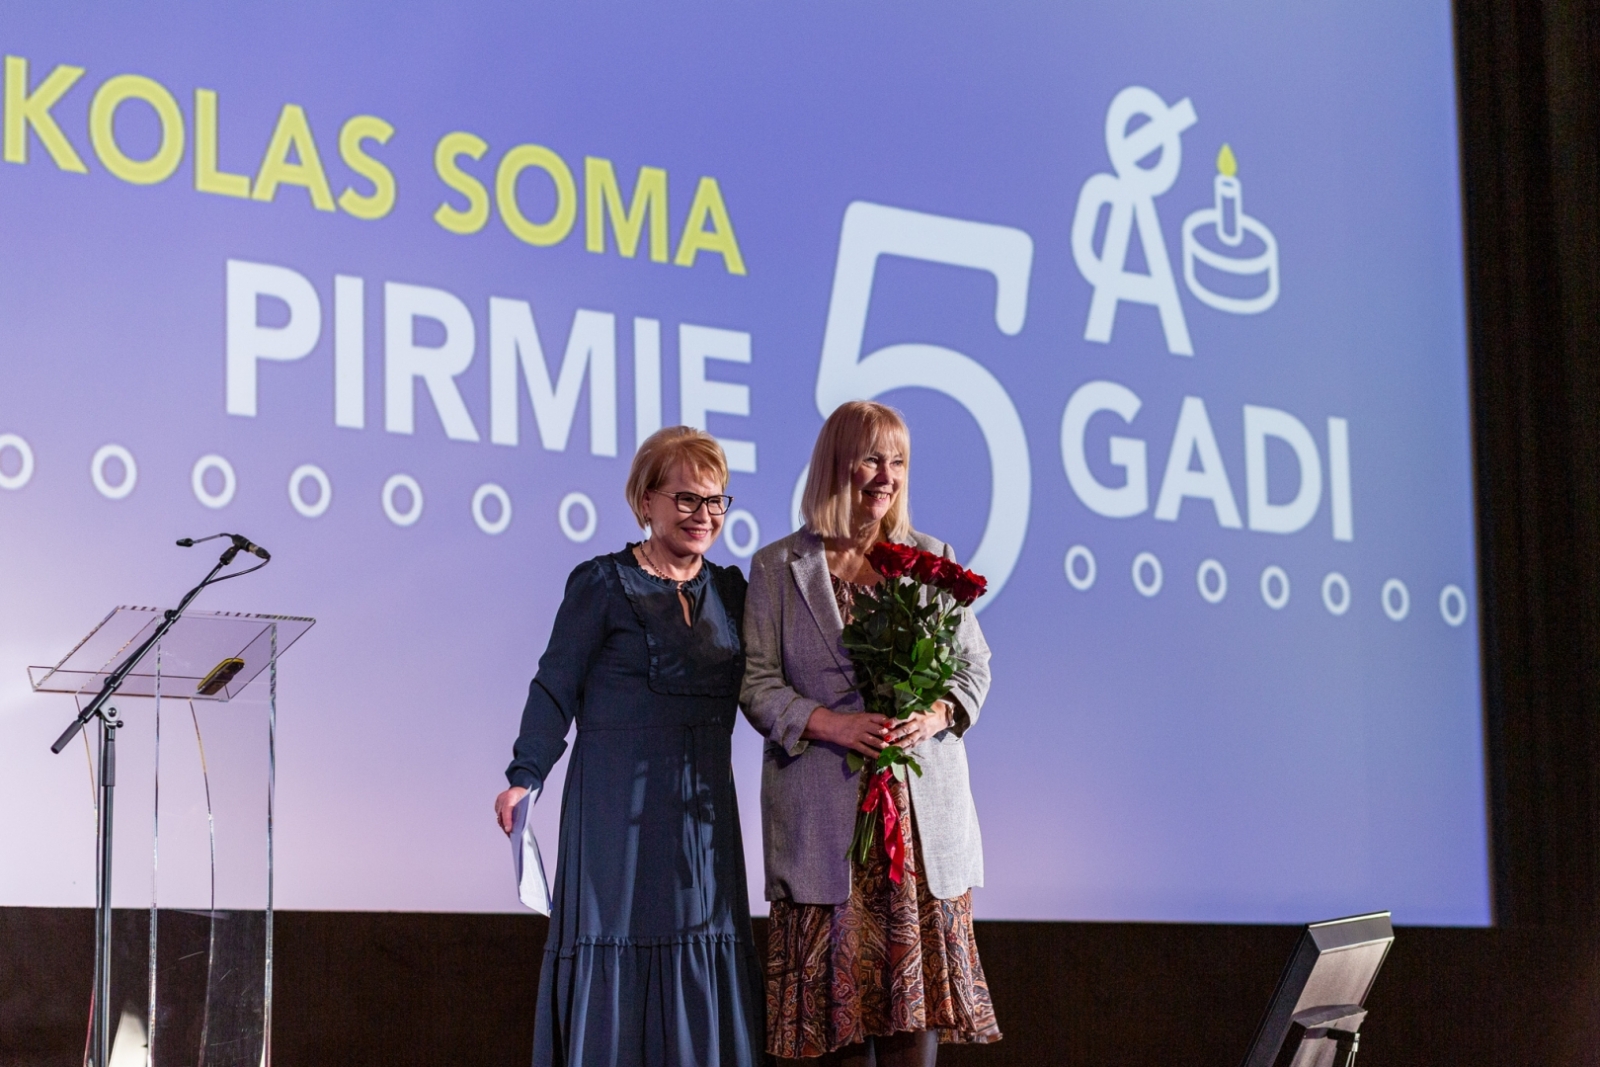 Konference “Kultūrizglītības programmas “Latvijas skolas soma” pirmie pieci gadi”